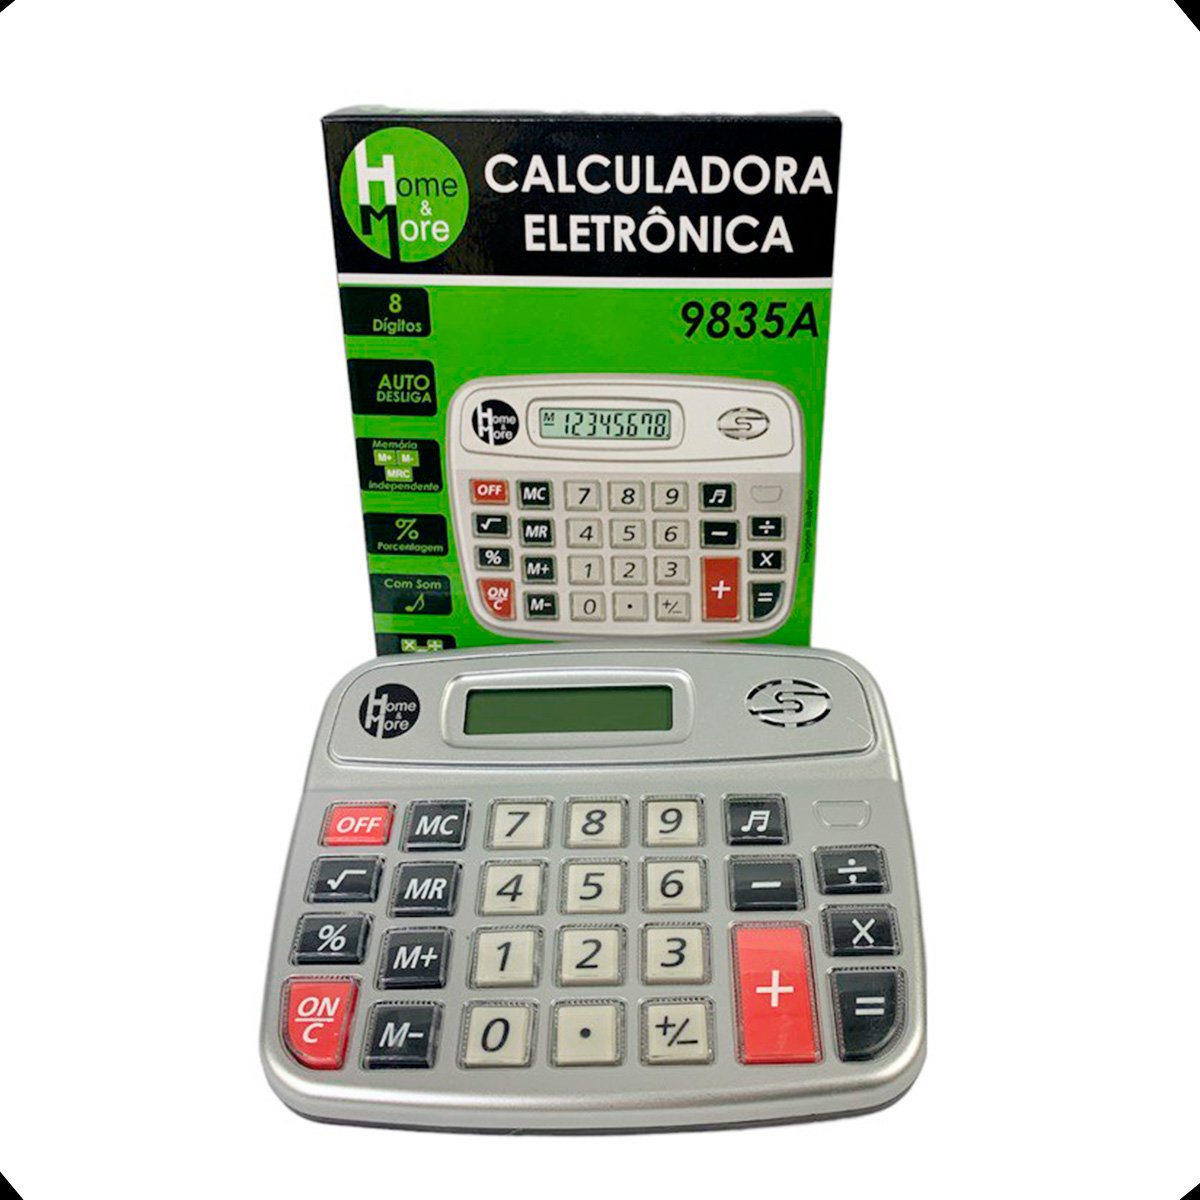 Calculadora Eletrônica C/8 Digitos 9835a Home More - 3